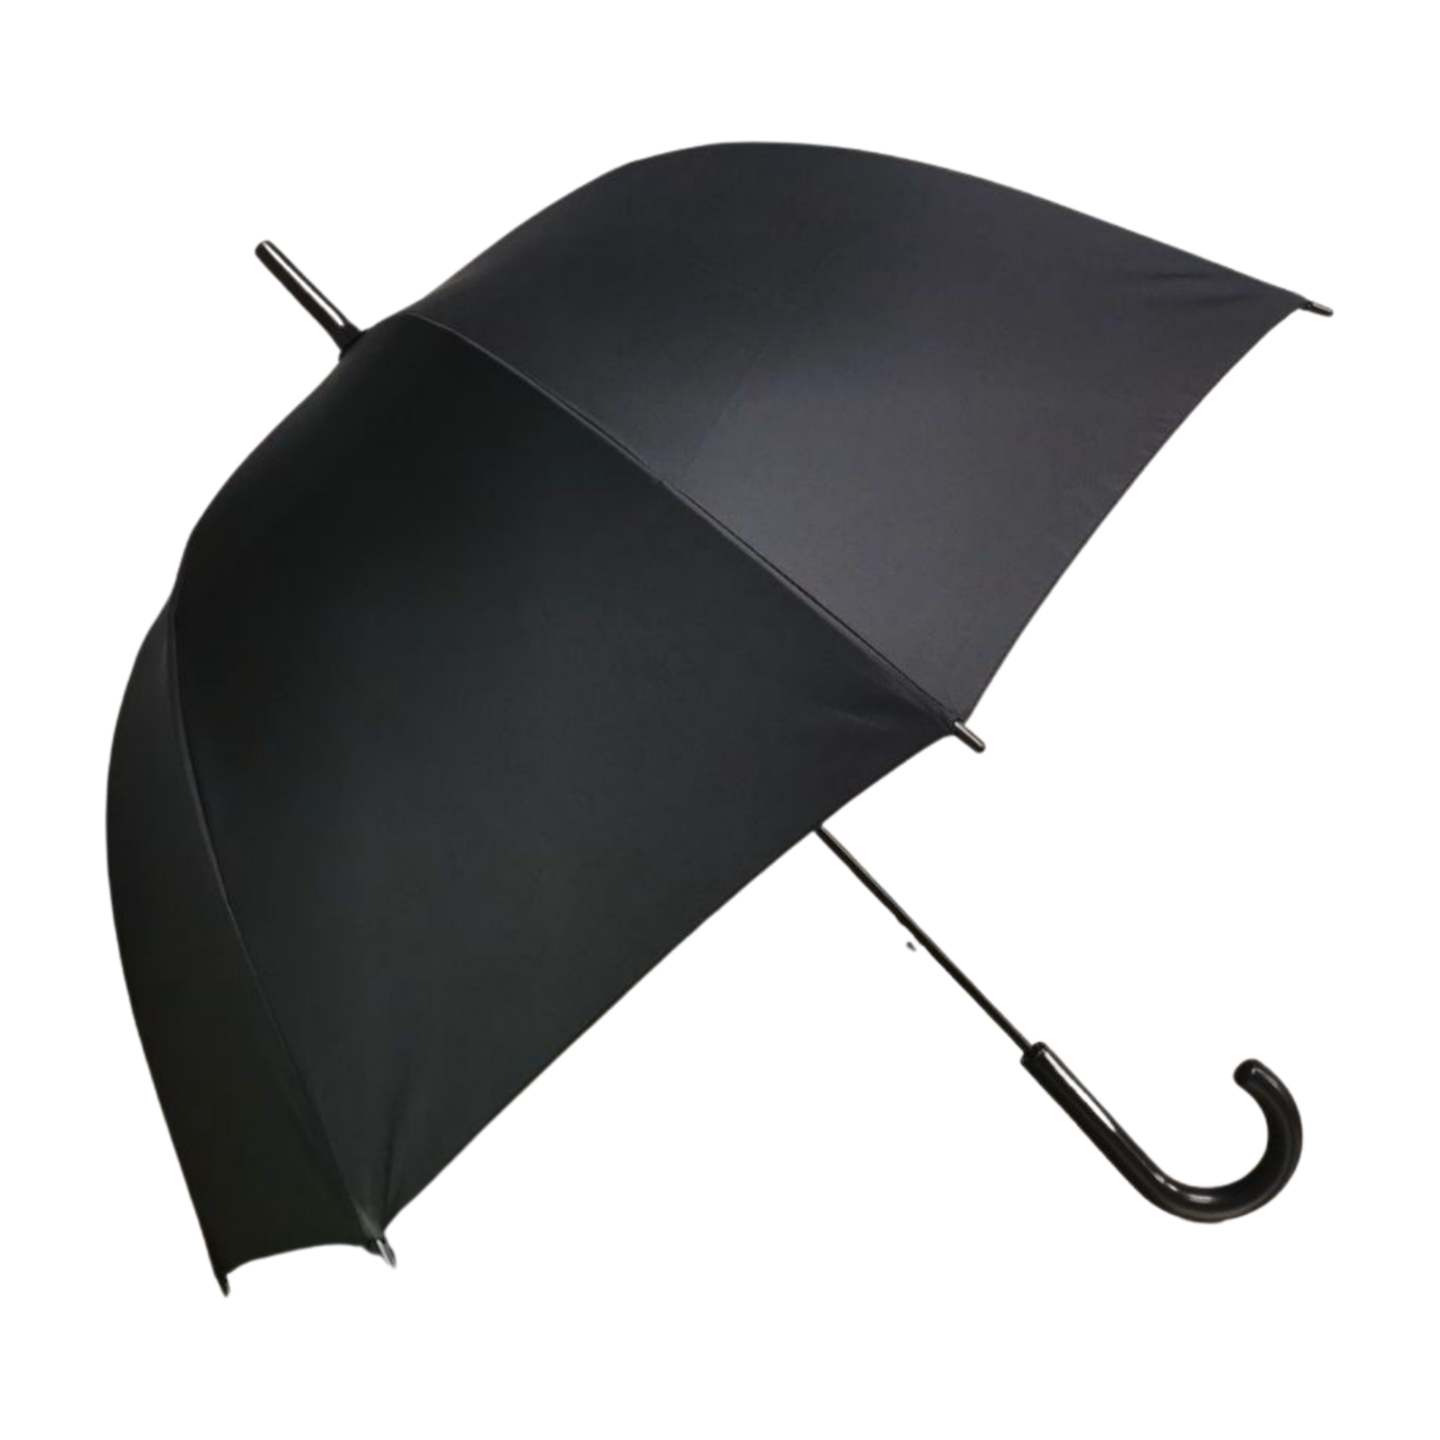 https://www.hodaumbrella.com/classic-dome-umbrella-product/